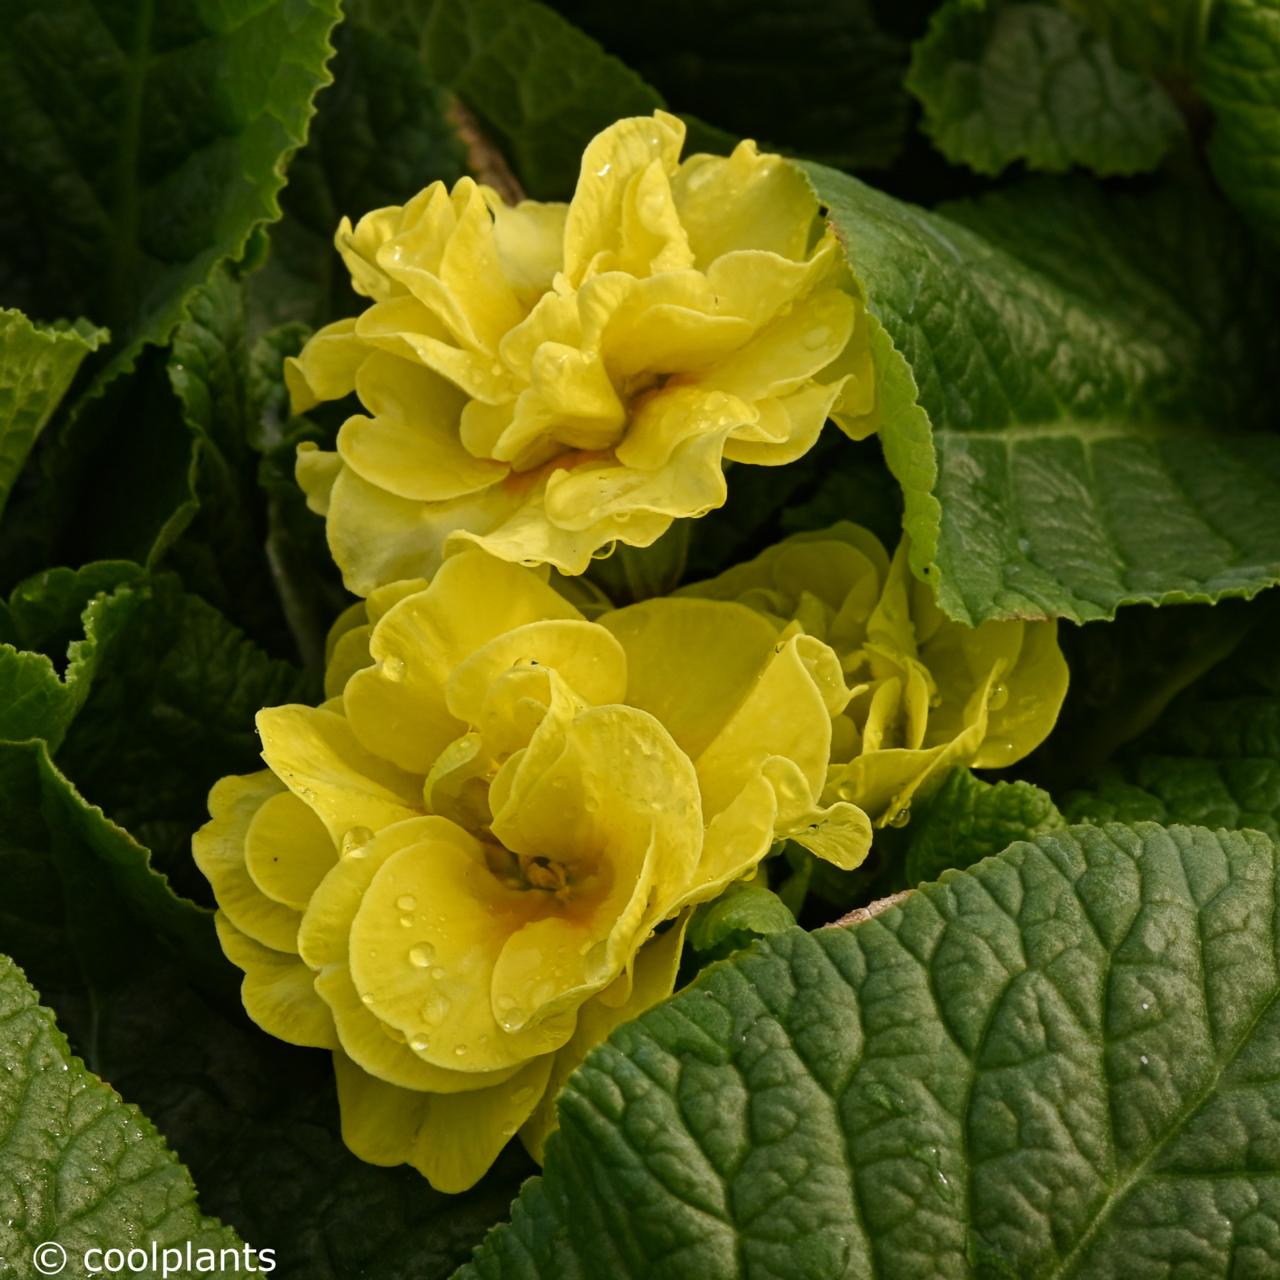 primula vulgaris 'queen yellow' - kaufen sie pflanzen bei coolplants